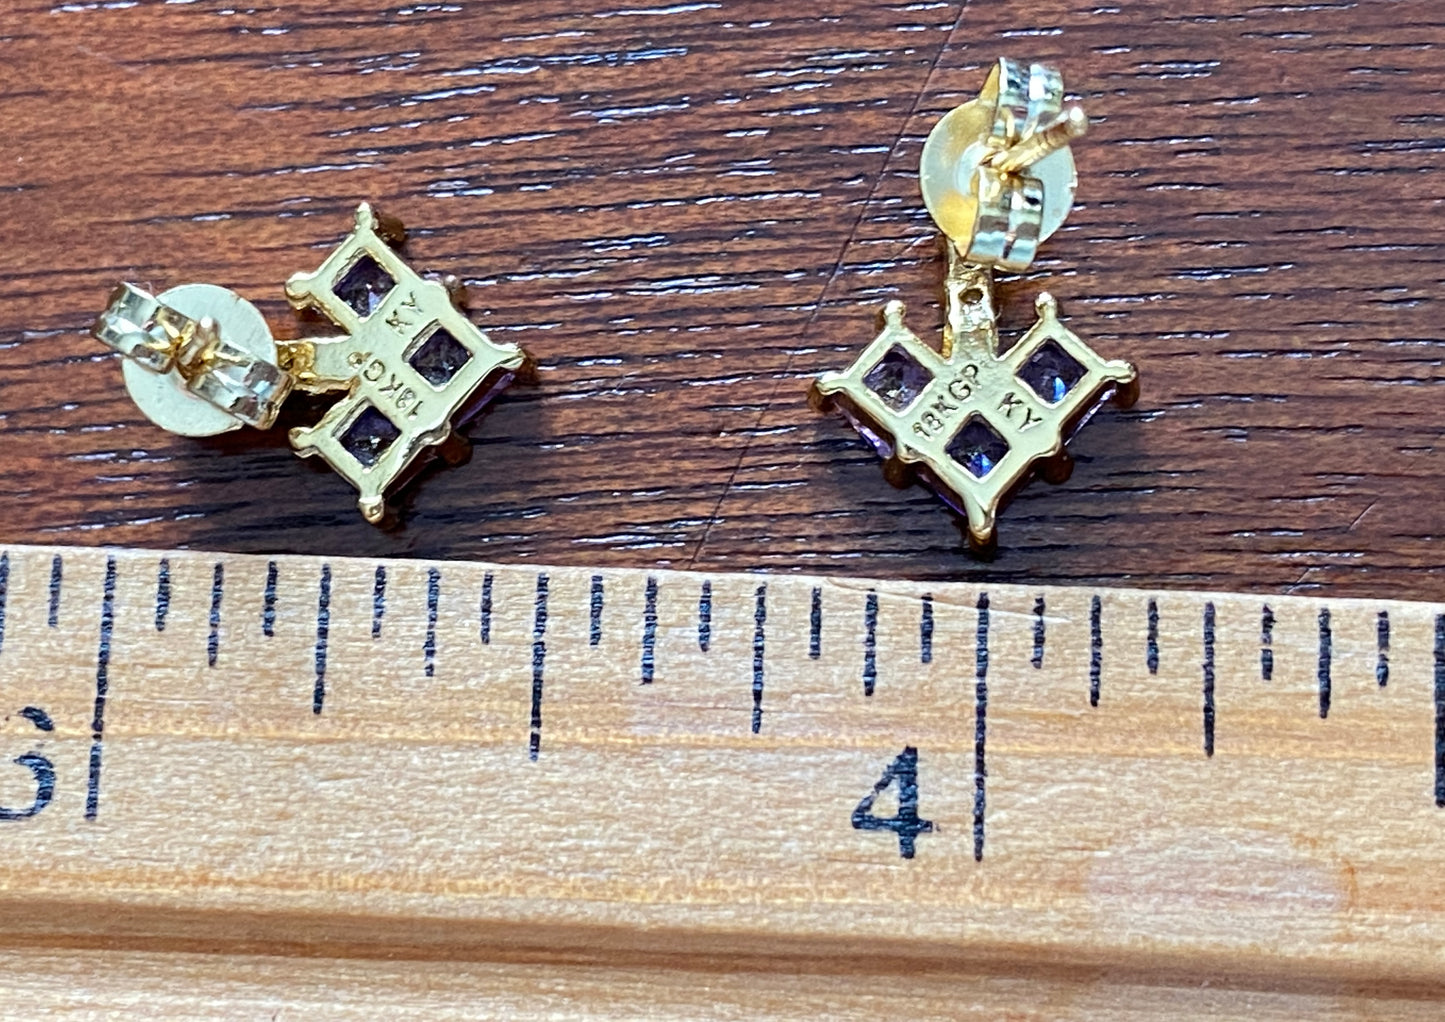 18k Yellow Gold Plate Heart Shaped Purple White Rhinestone Pierced Earrings